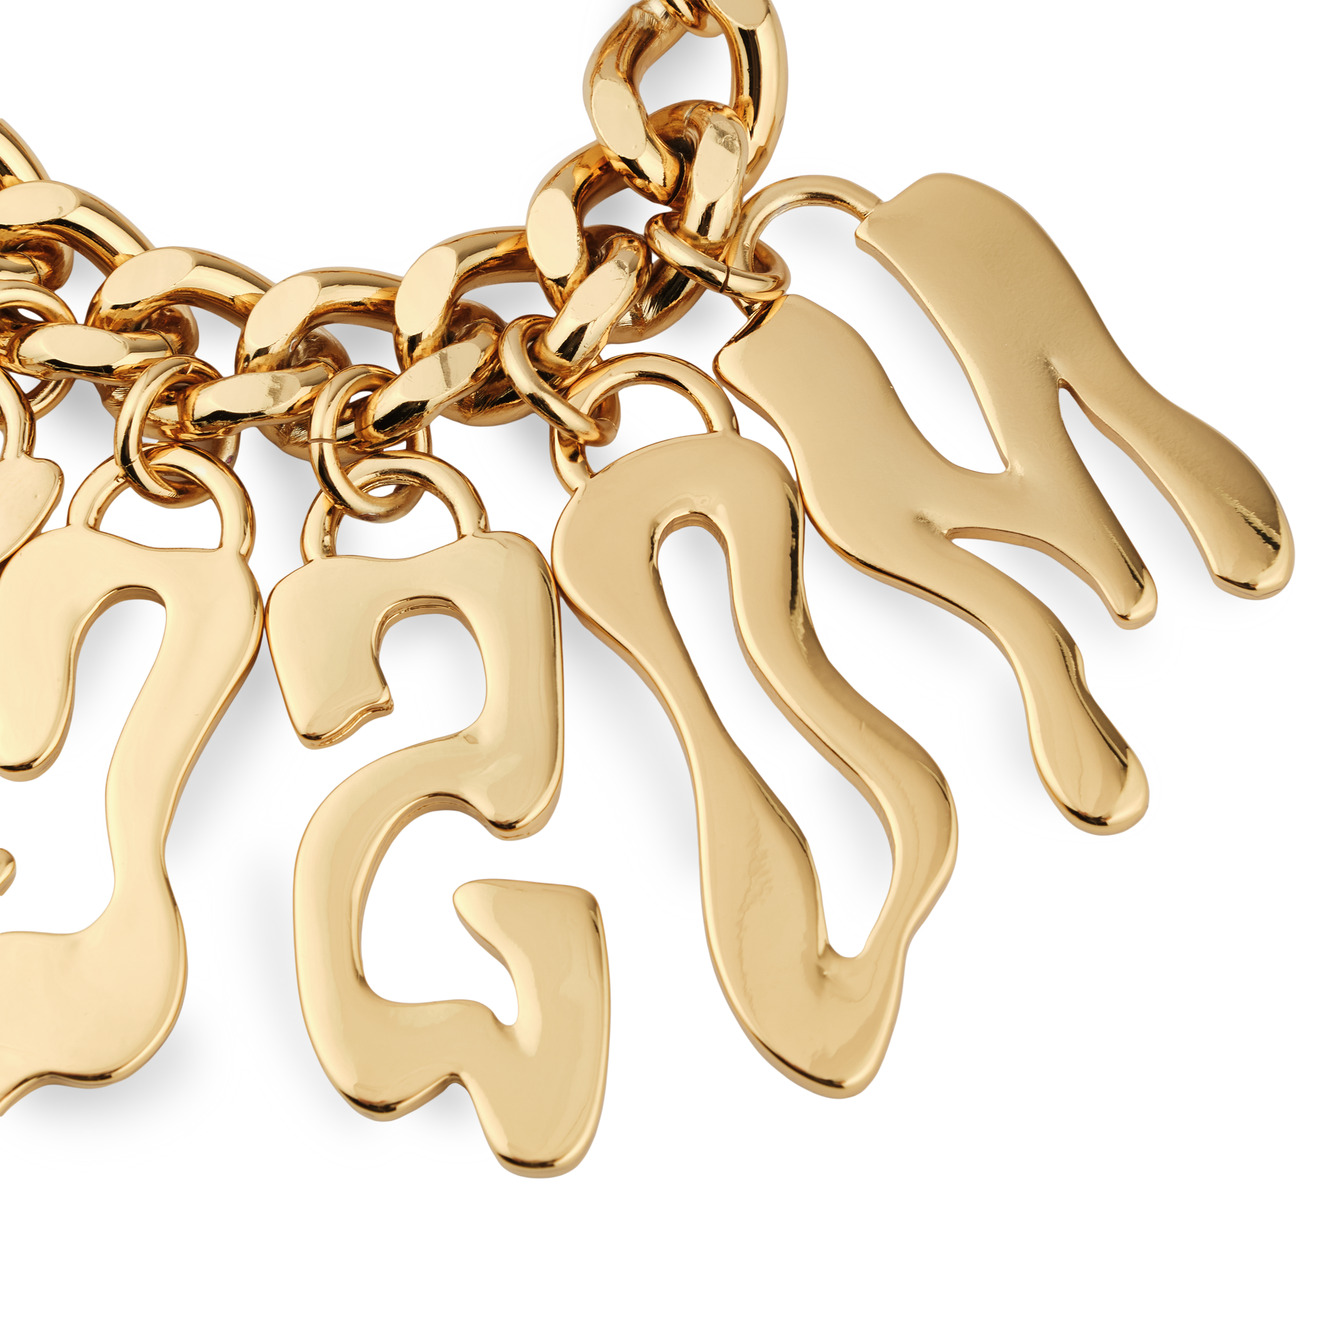 Moschino Золотистый браслет-цепь с расплывчатыми буквами aqua золотистый браслет цепь из крупных звеньев